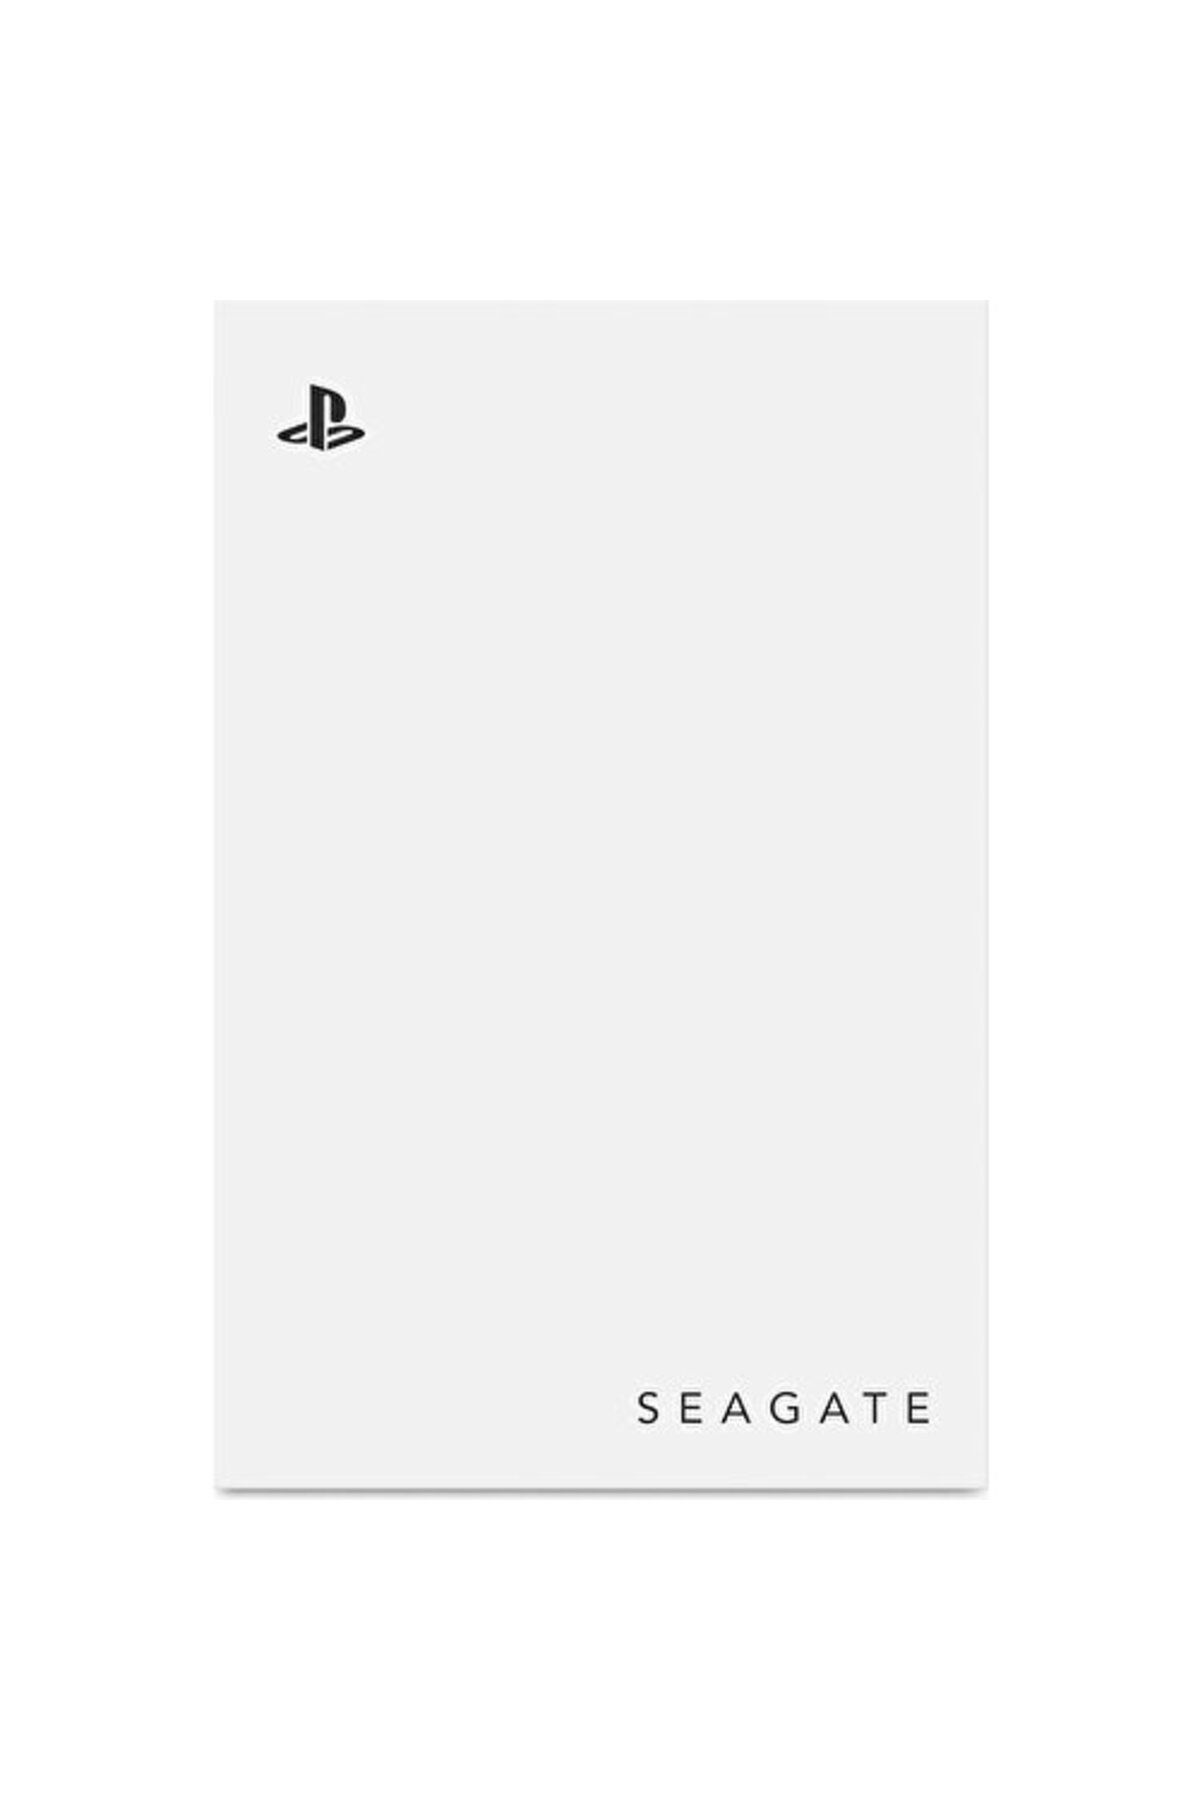 Seagate Ps5 2tb Harici HDD Için Oyun Sürücüsü - USB 3.0, Resmi Lisanslı, Mavi LED (STLV2000101)